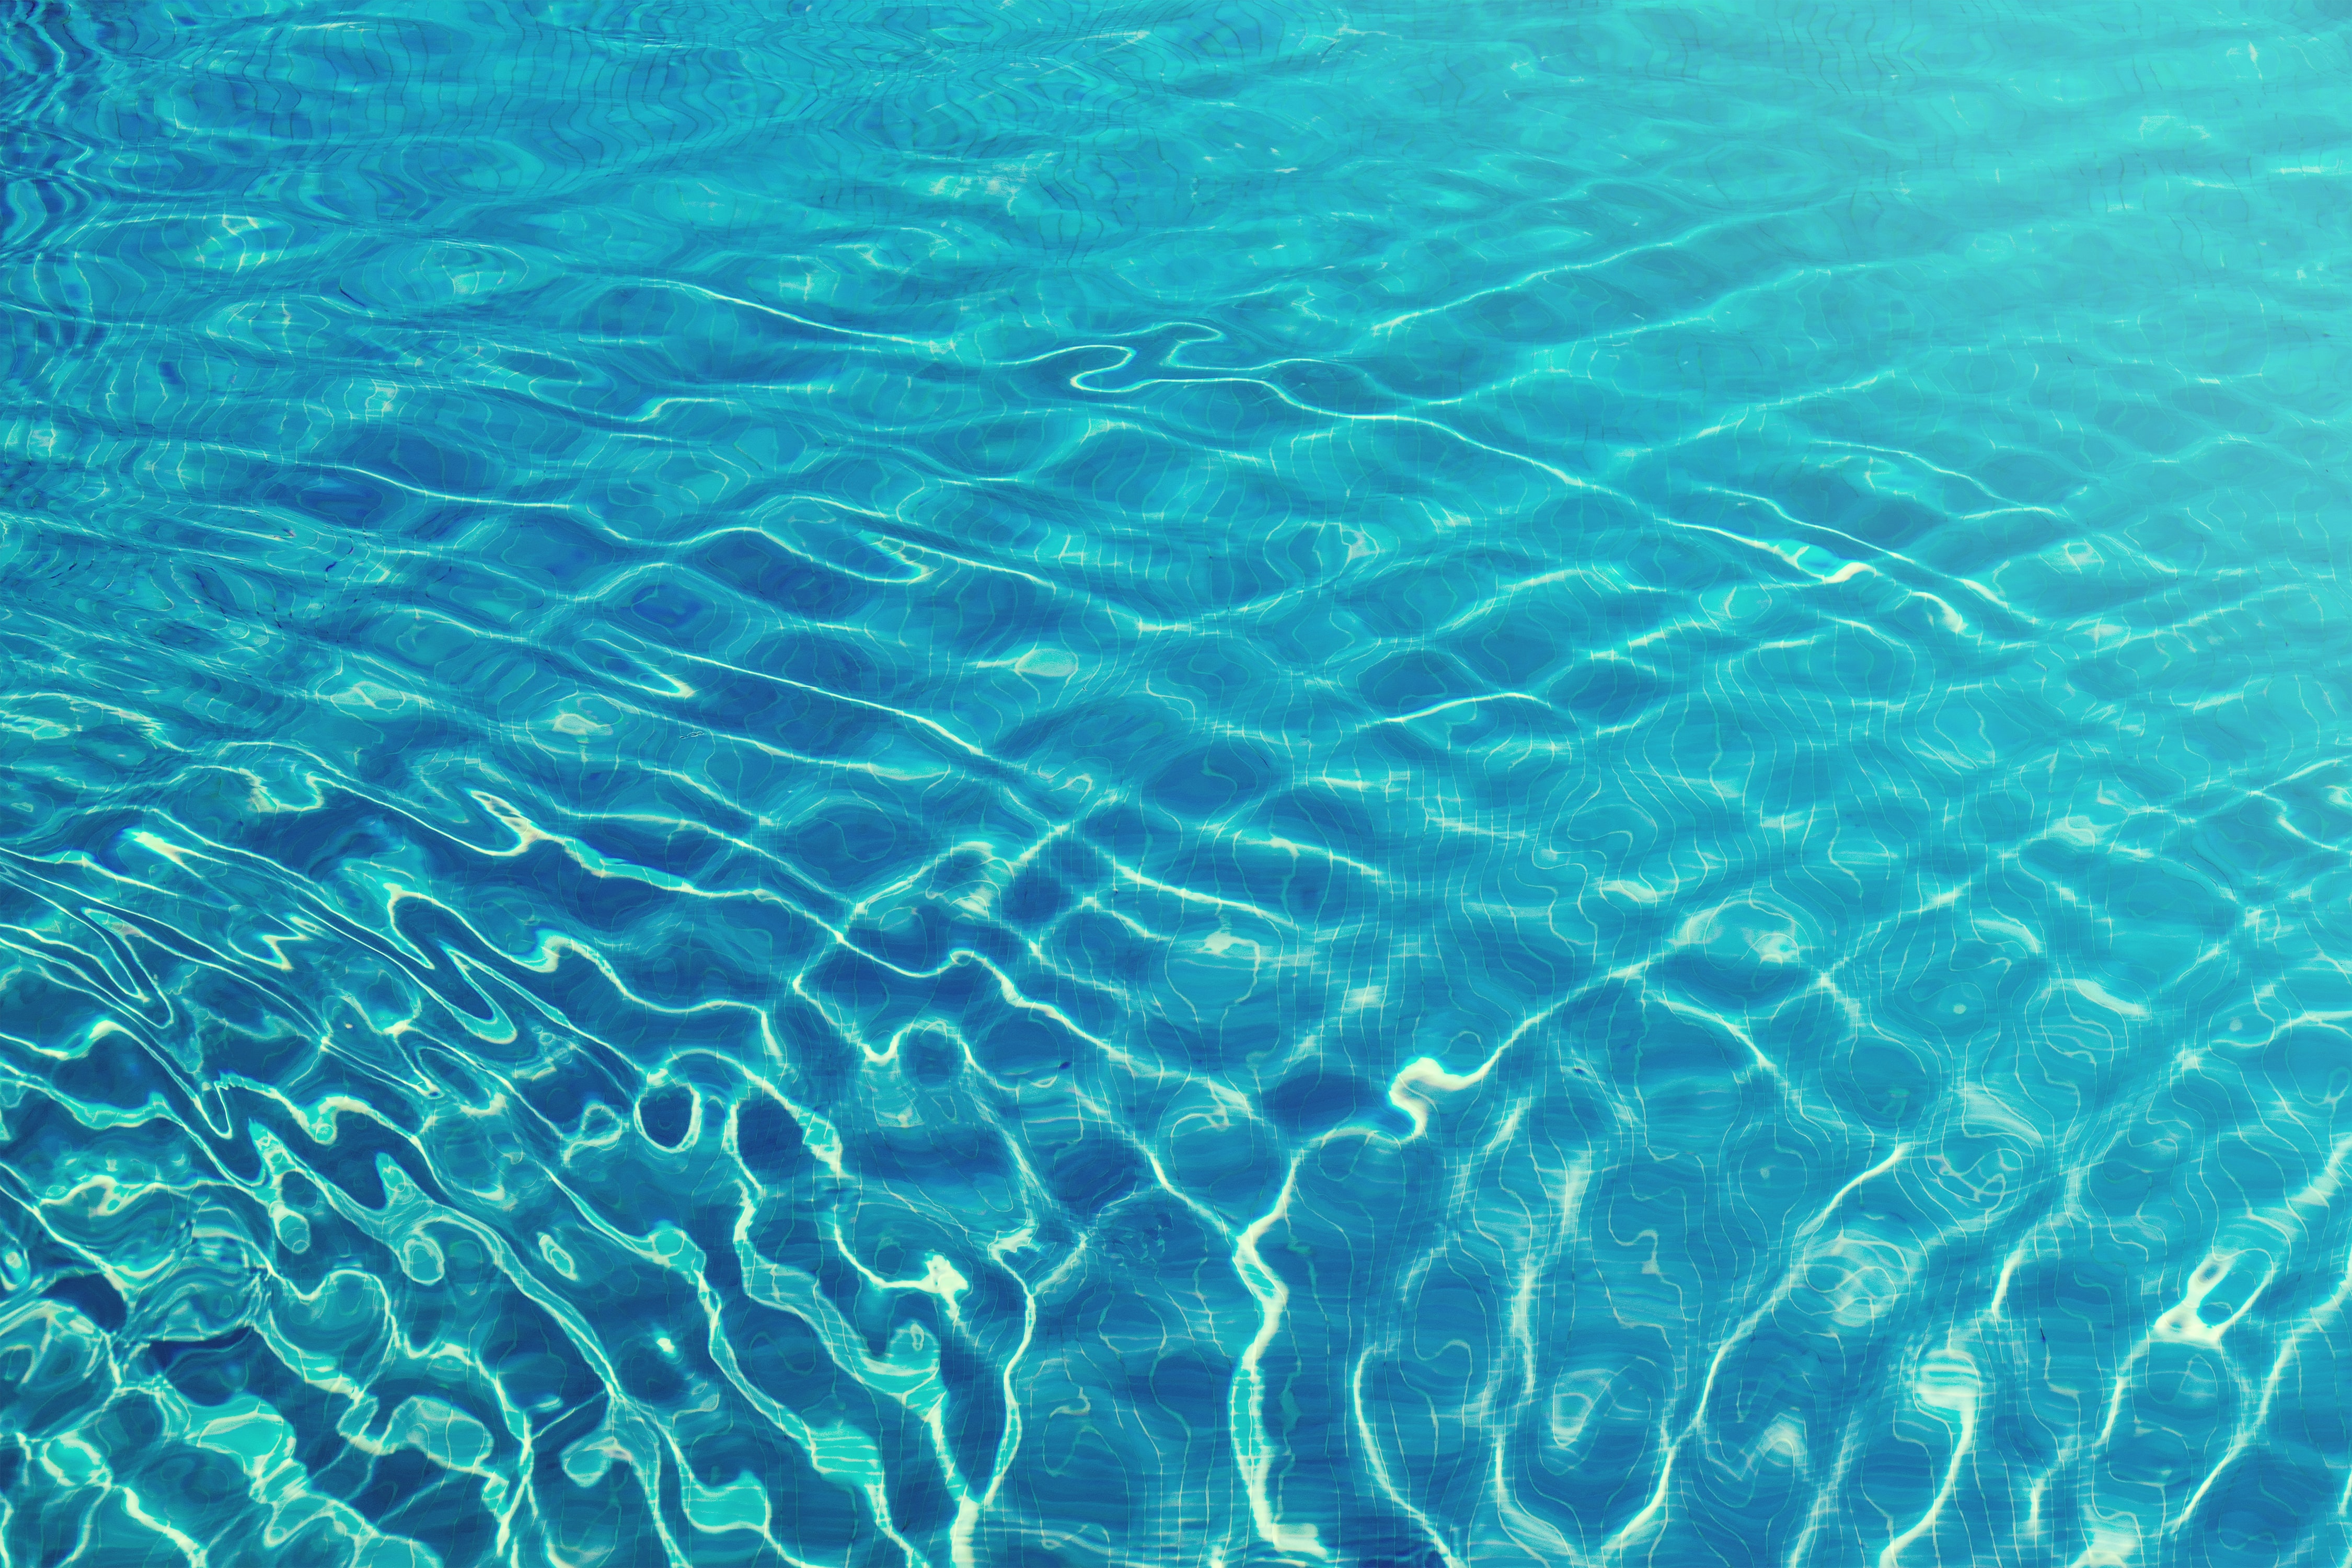 A foto mostra uma piscina, mas o foco está somente na água, com uma luz do sol refletindo.